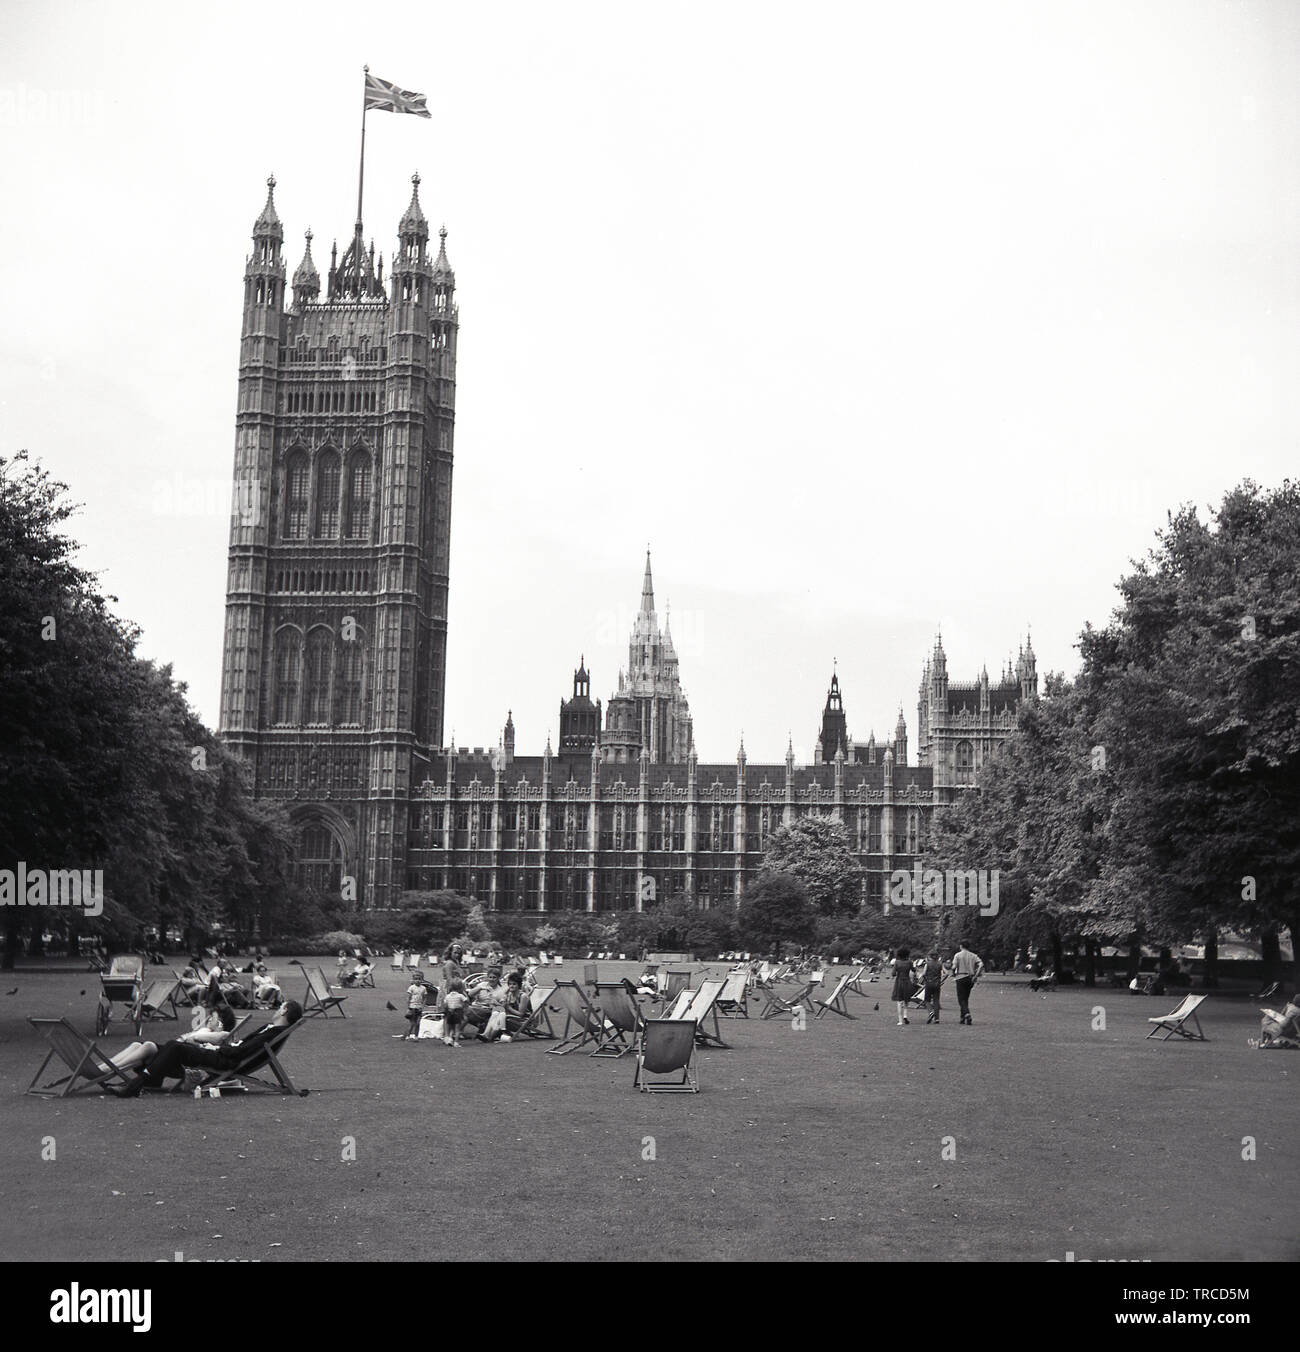 1960s, historique, vue sur les jardins de la tour Victoria avec des personnes dans des transats assis sur l'herbe, Westminster, Londres, Angleterre, Royaume-Uni. Le drapeau de l'Union Jack survole la tour, située à côté du palais de Westminster. Banque D'Images